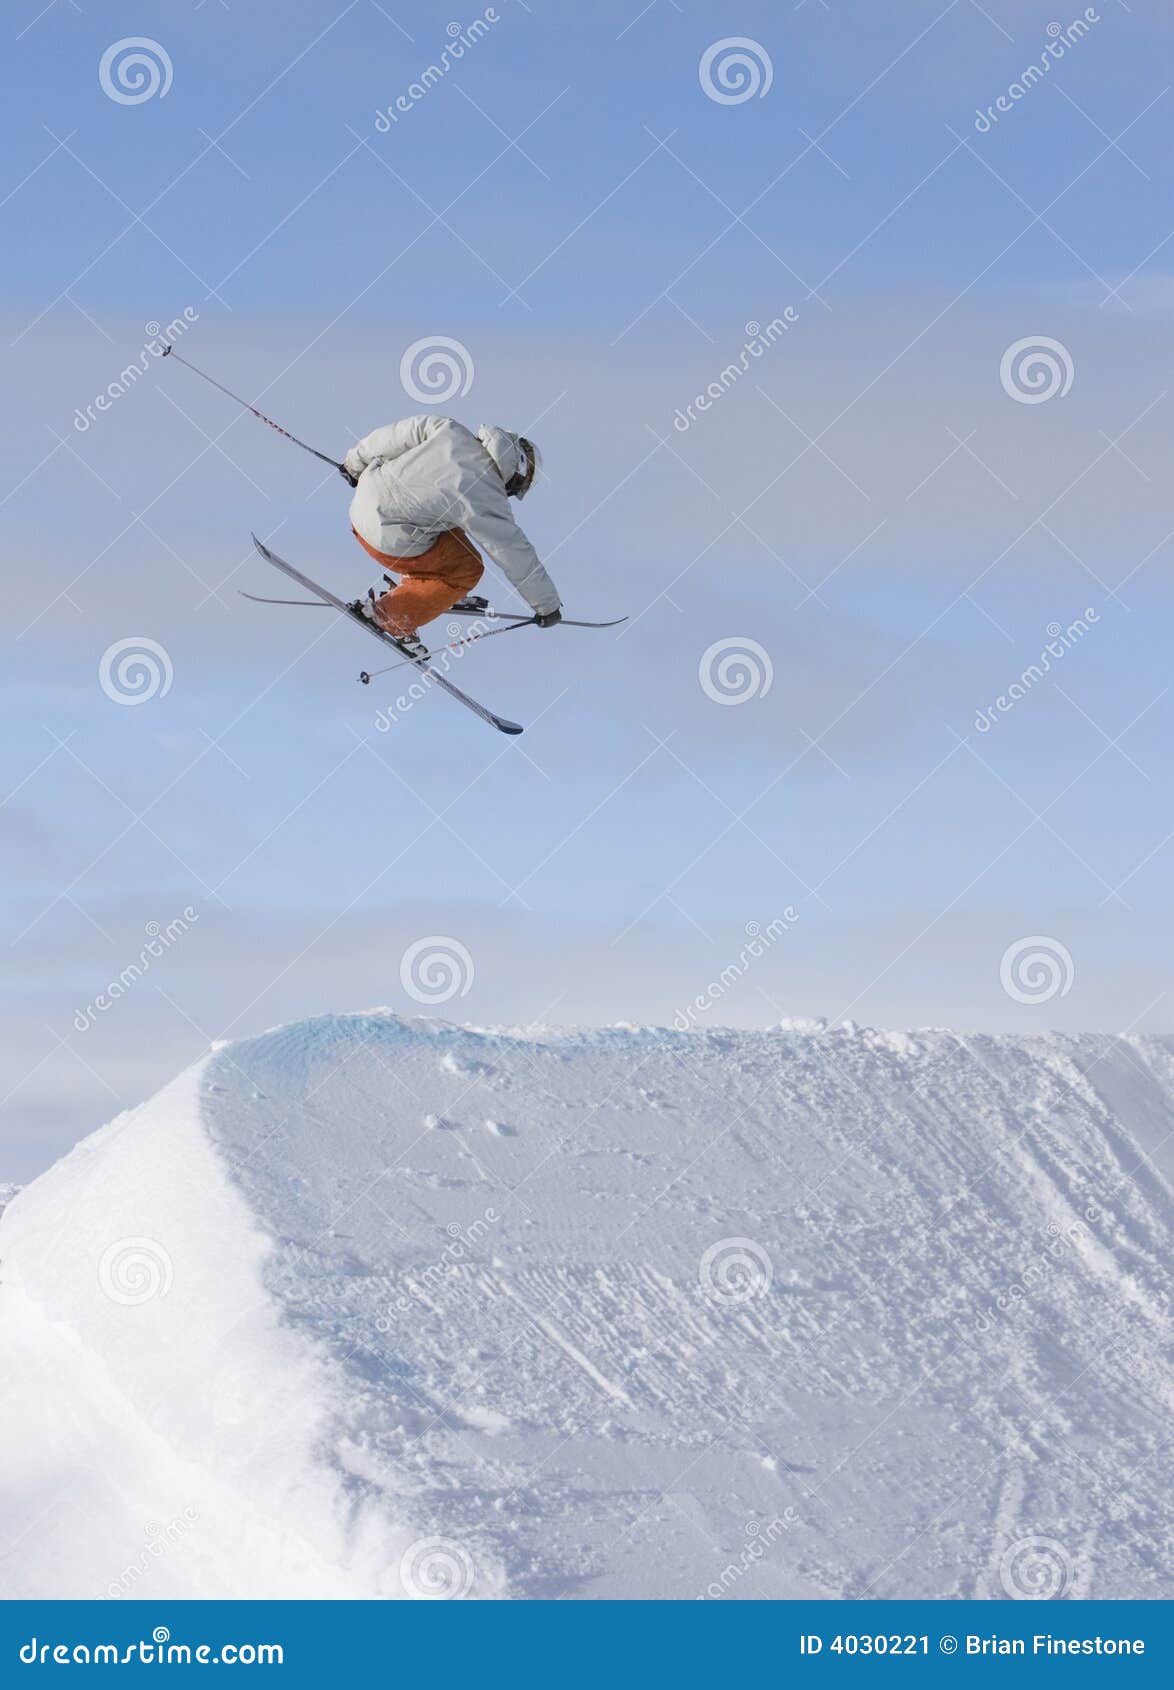 Skier Jump 360 Stock Image Image 4030221 within Amazing  ski jump 360 for Property